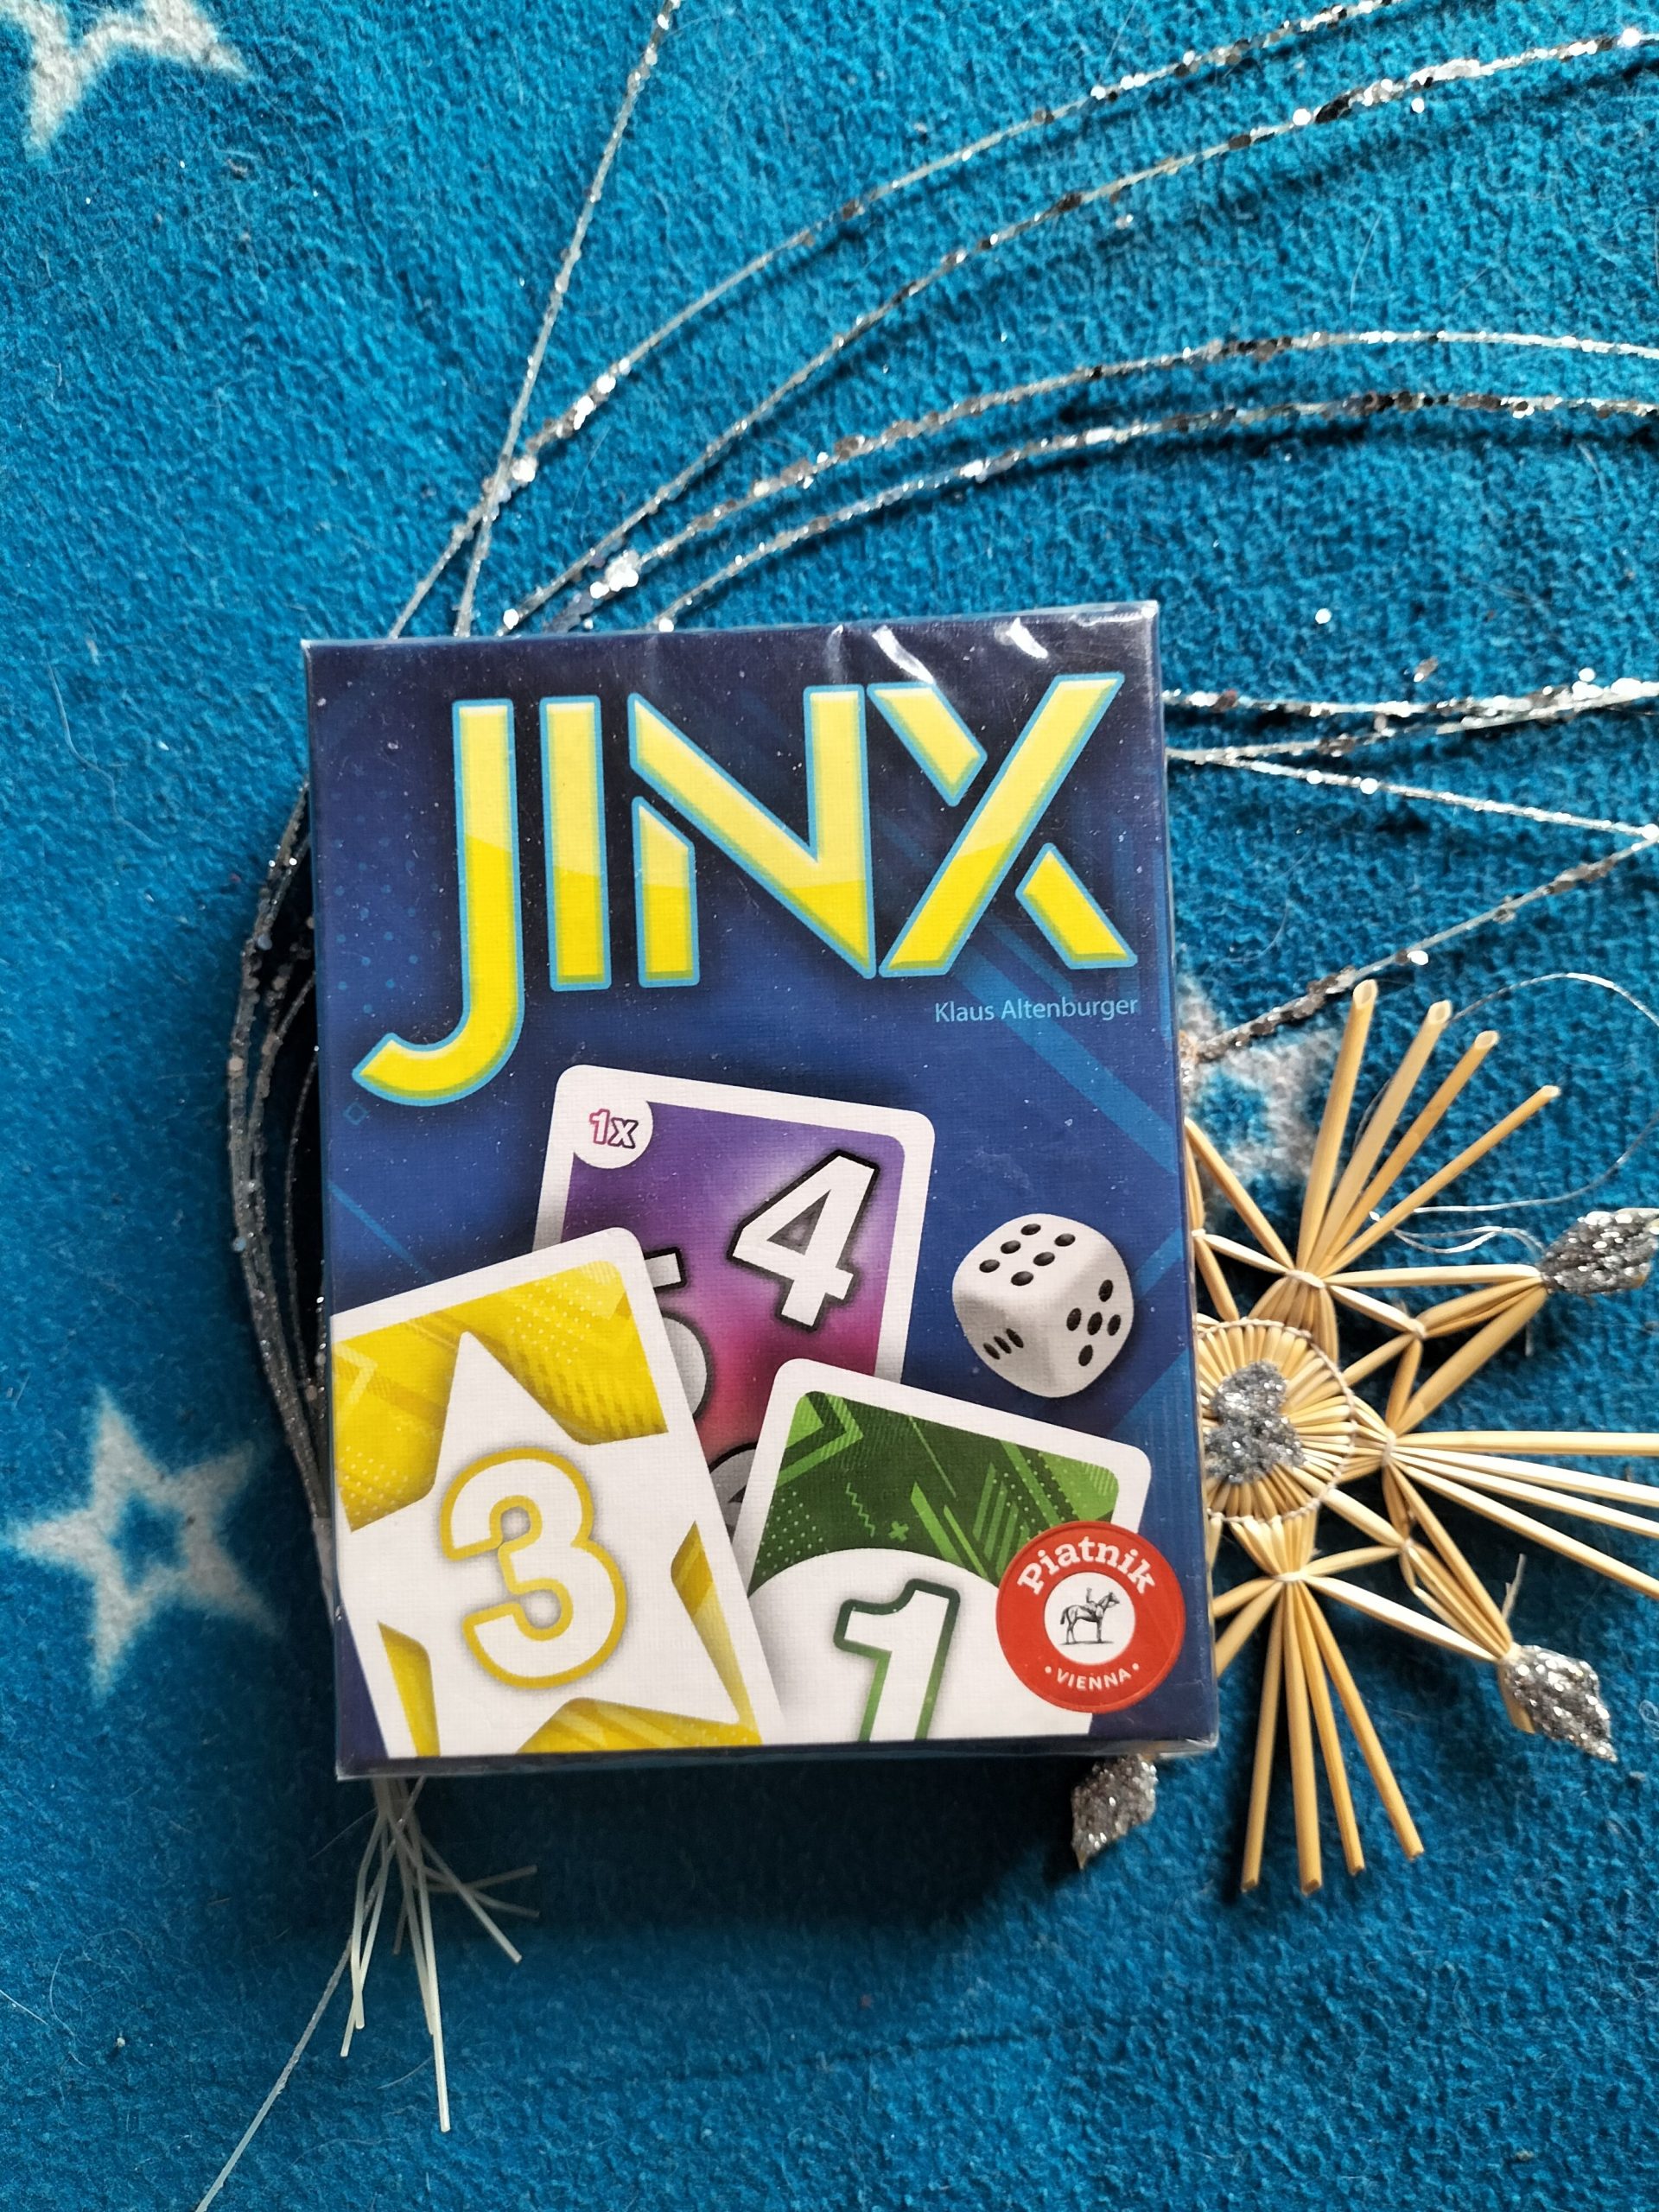 Schachtel des Spiel Jinx.